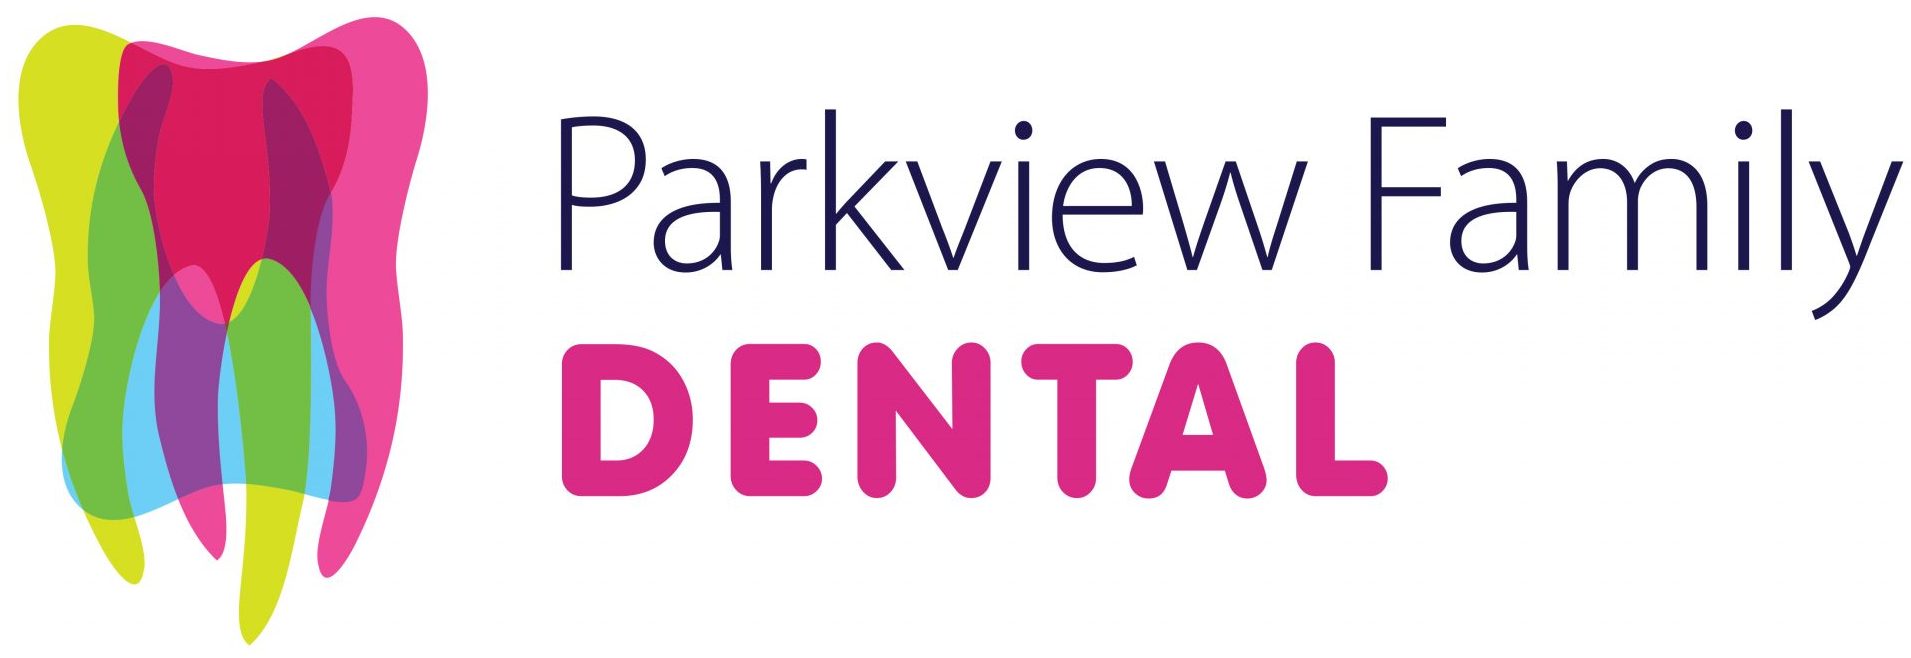 Parkview Family Dental